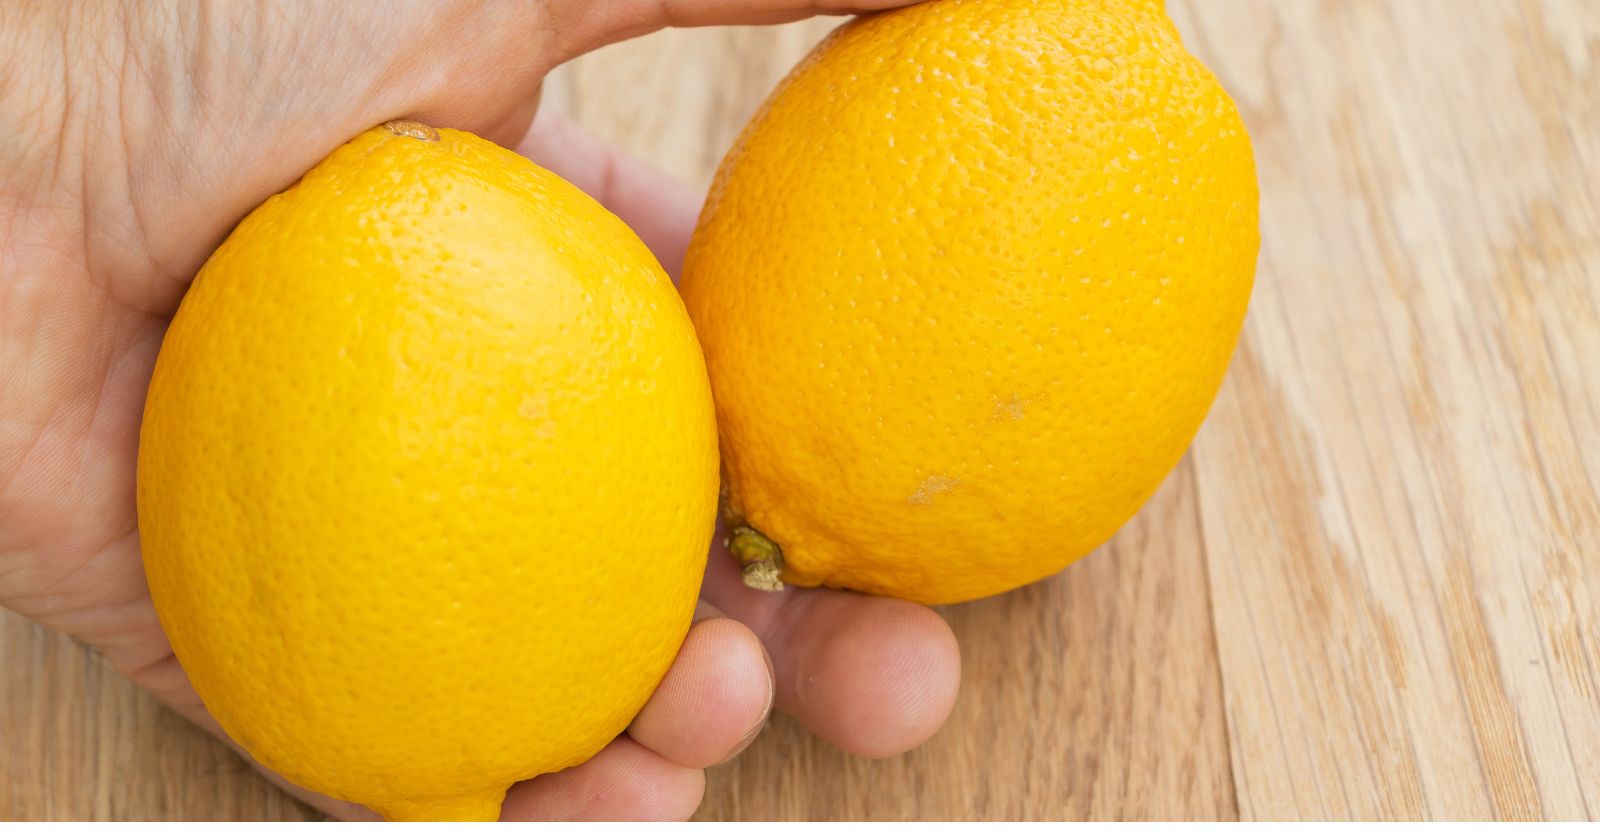 Benefits Of Lemons For The Elderly